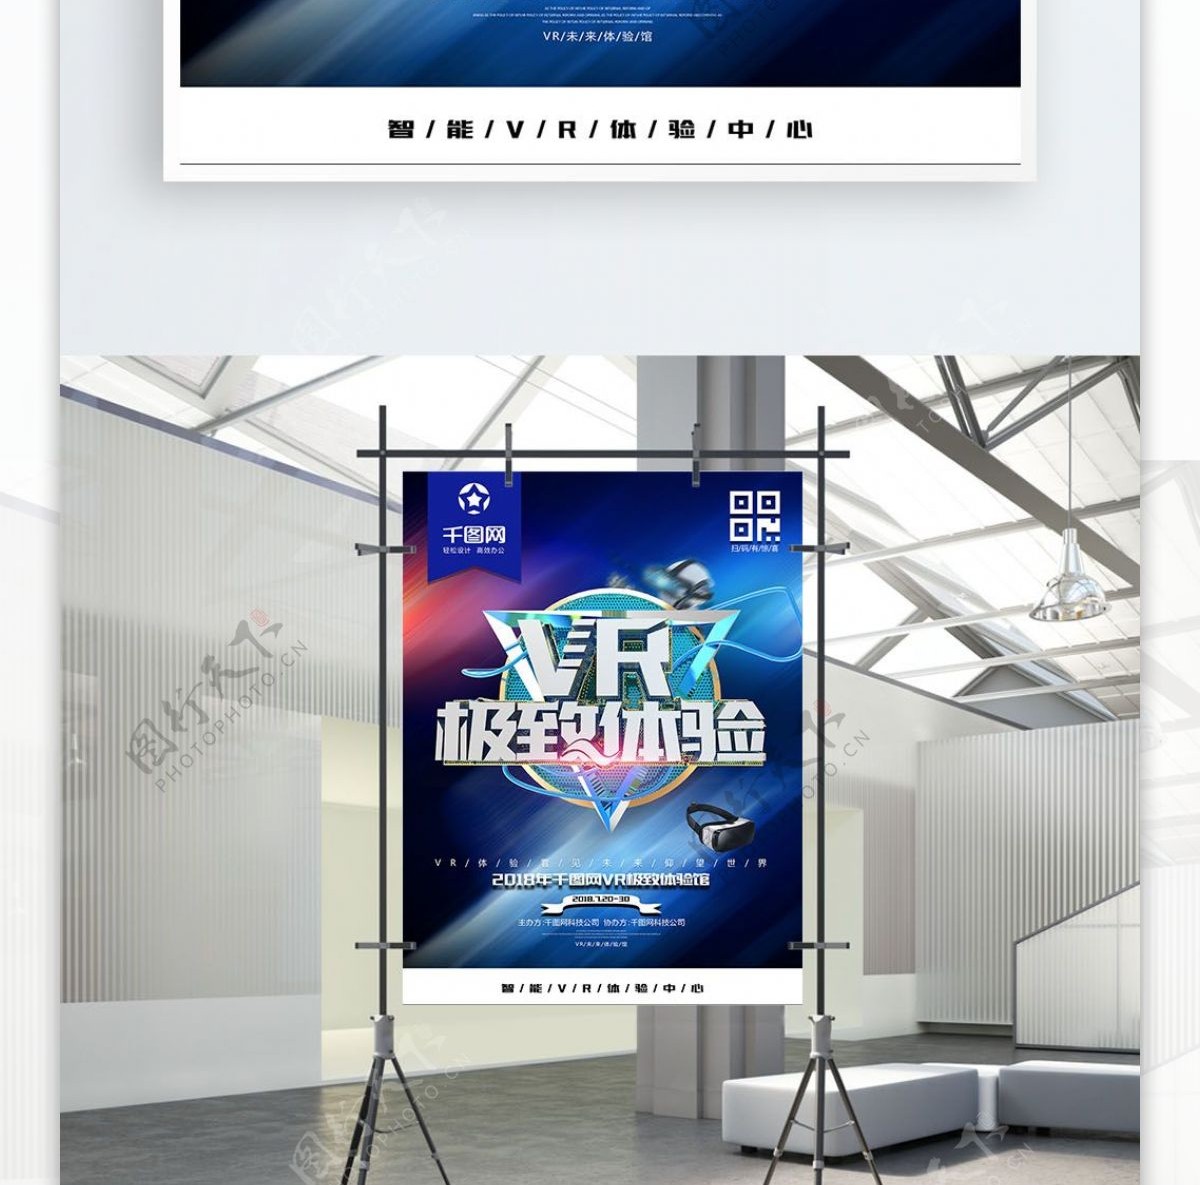 C4D创意炫酷金属立体字VR科技海报